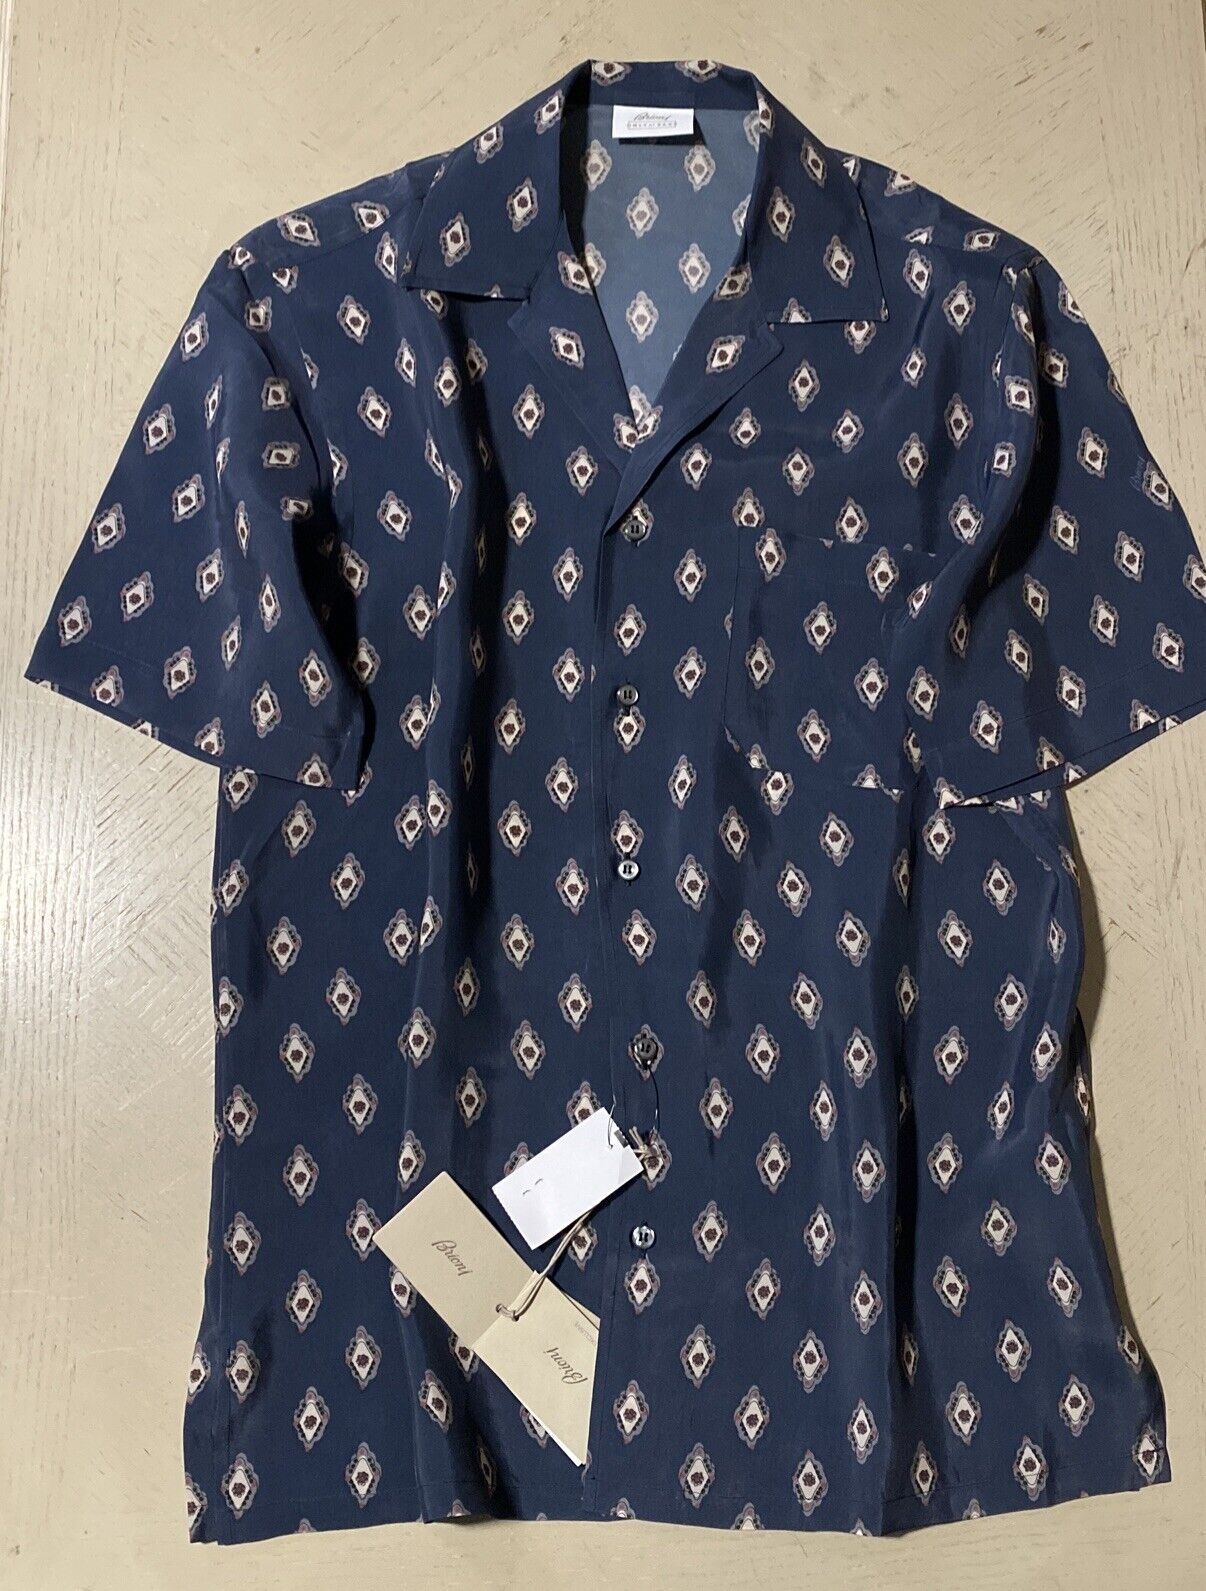 Neu mit Etikett: 675 $ Brioni Exklusives Cupro-Kurzarmhemd mit Medaillon-Print Blau M